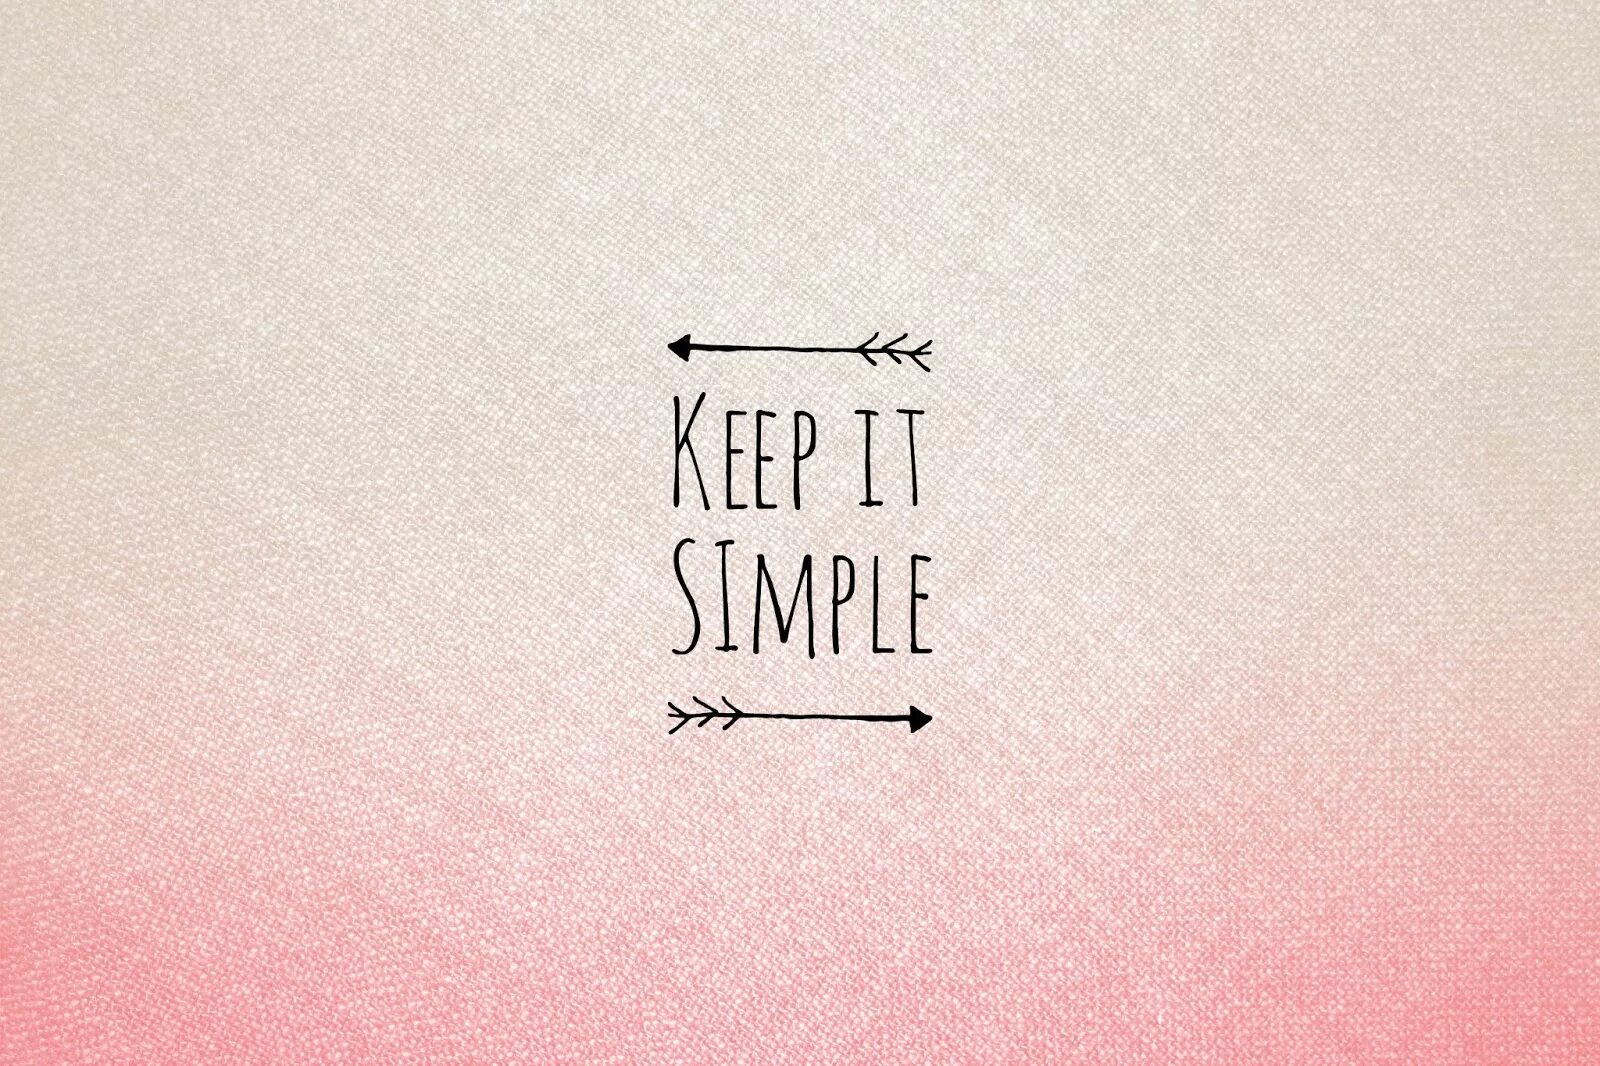 Обои simple. Simple заставки. Keep it simple. Keep smile обои. Simply make it